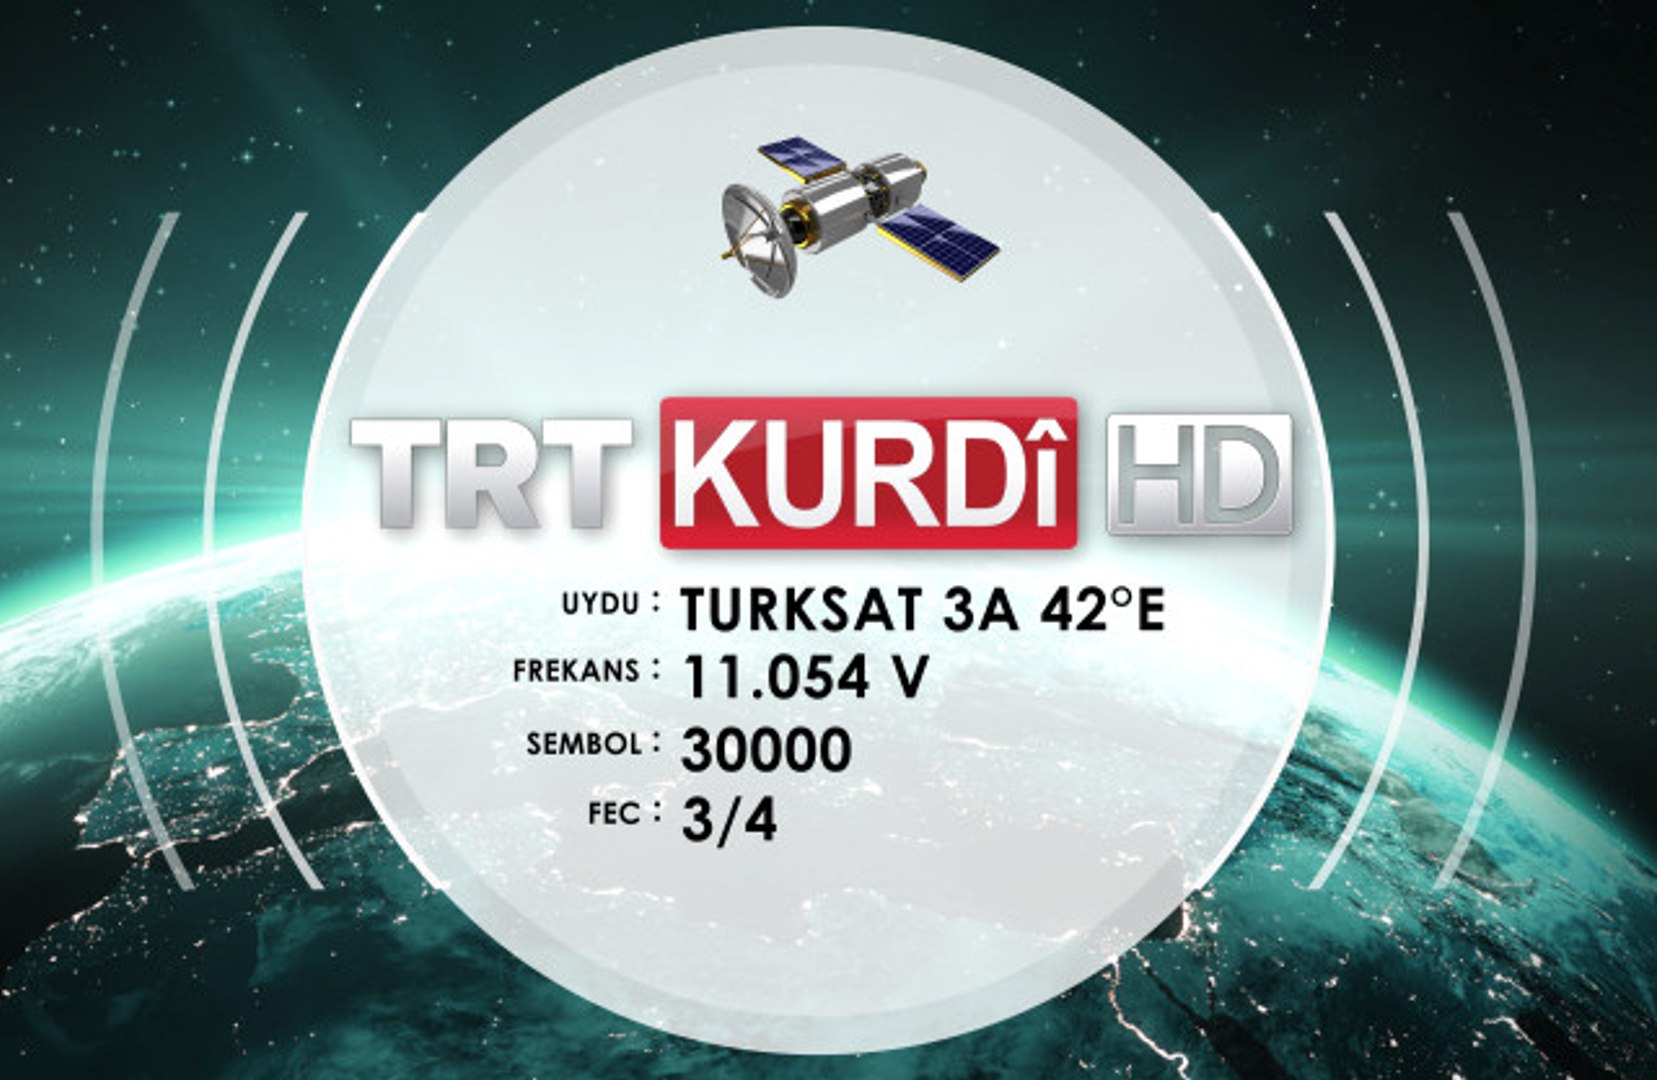 TRT Kürdi HD Yayına Geçti, Görüntü Cam Gibi Oldu - Dailymotion Video